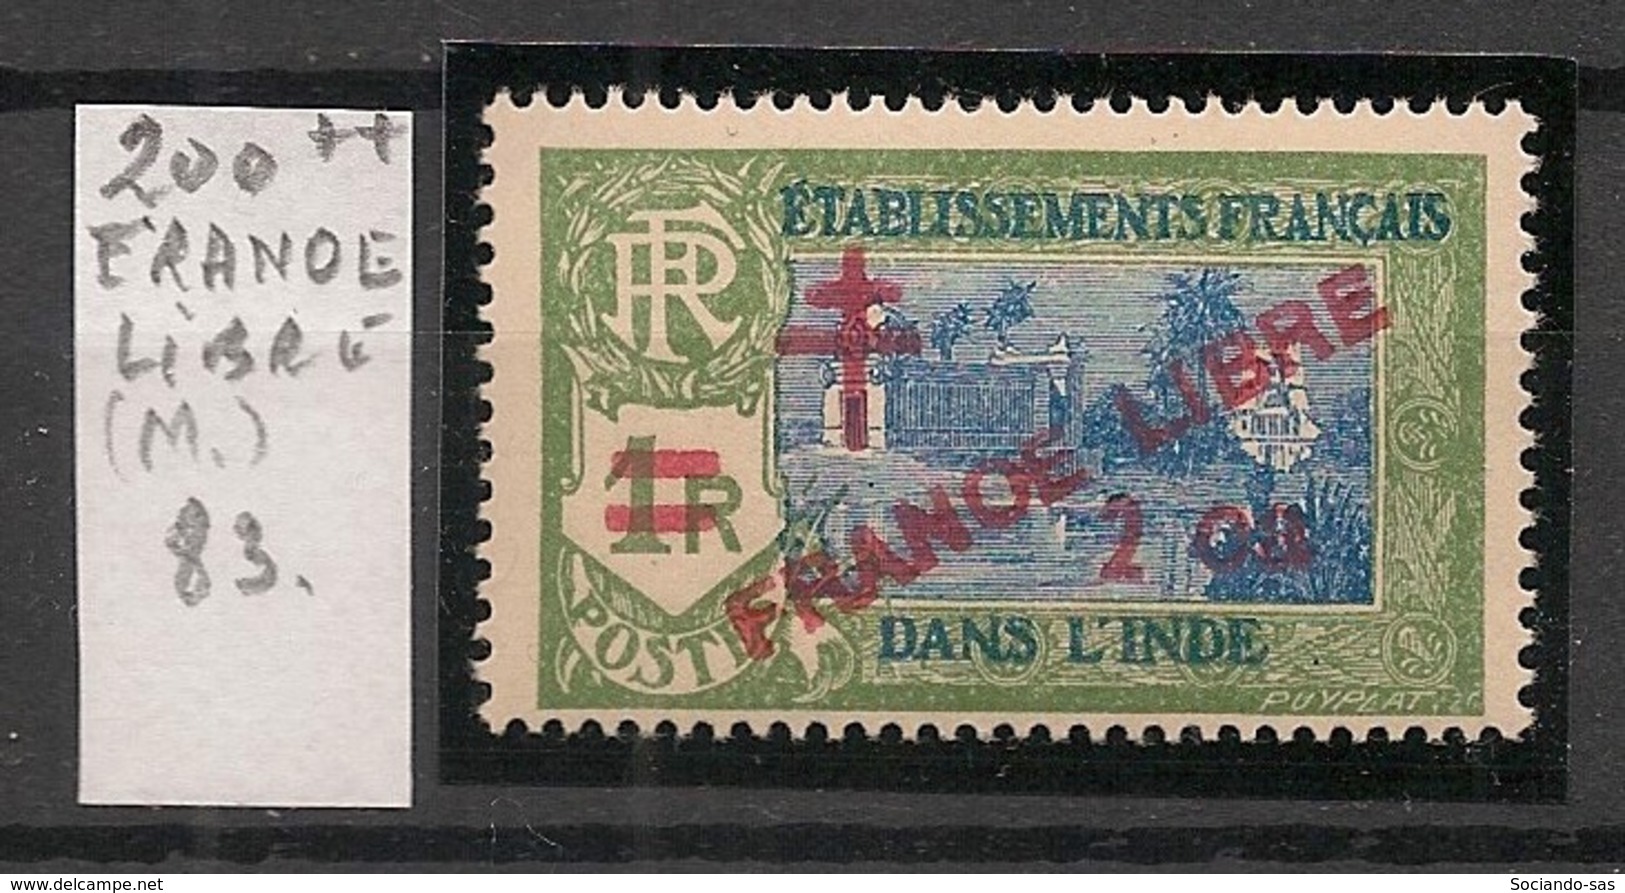 Inde - 1943 - N°Yv. 200 - Variété FRANOE Libre - Neuf Luxe ** / MNH / Postfrisch - Neufs